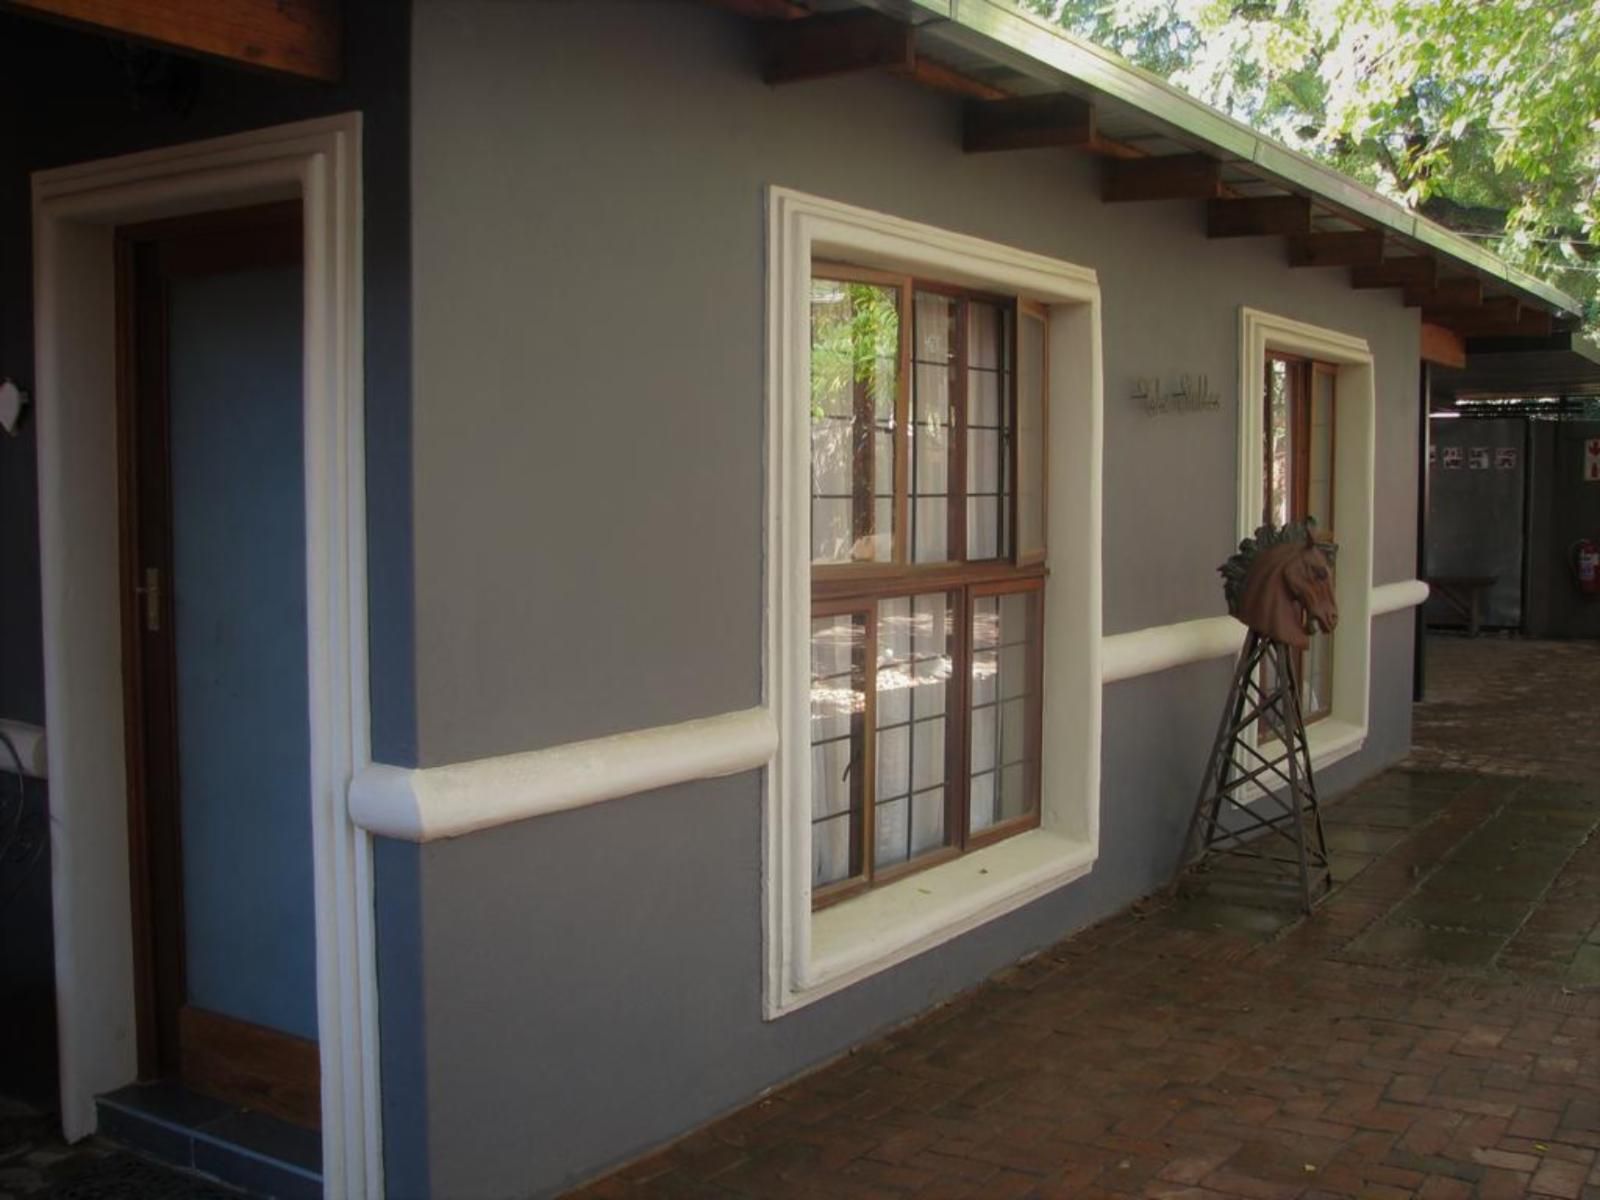 The Village In Hatfield Hatfield Pretoria Tshwane Gauteng South Africa Door, Architecture, House, Building